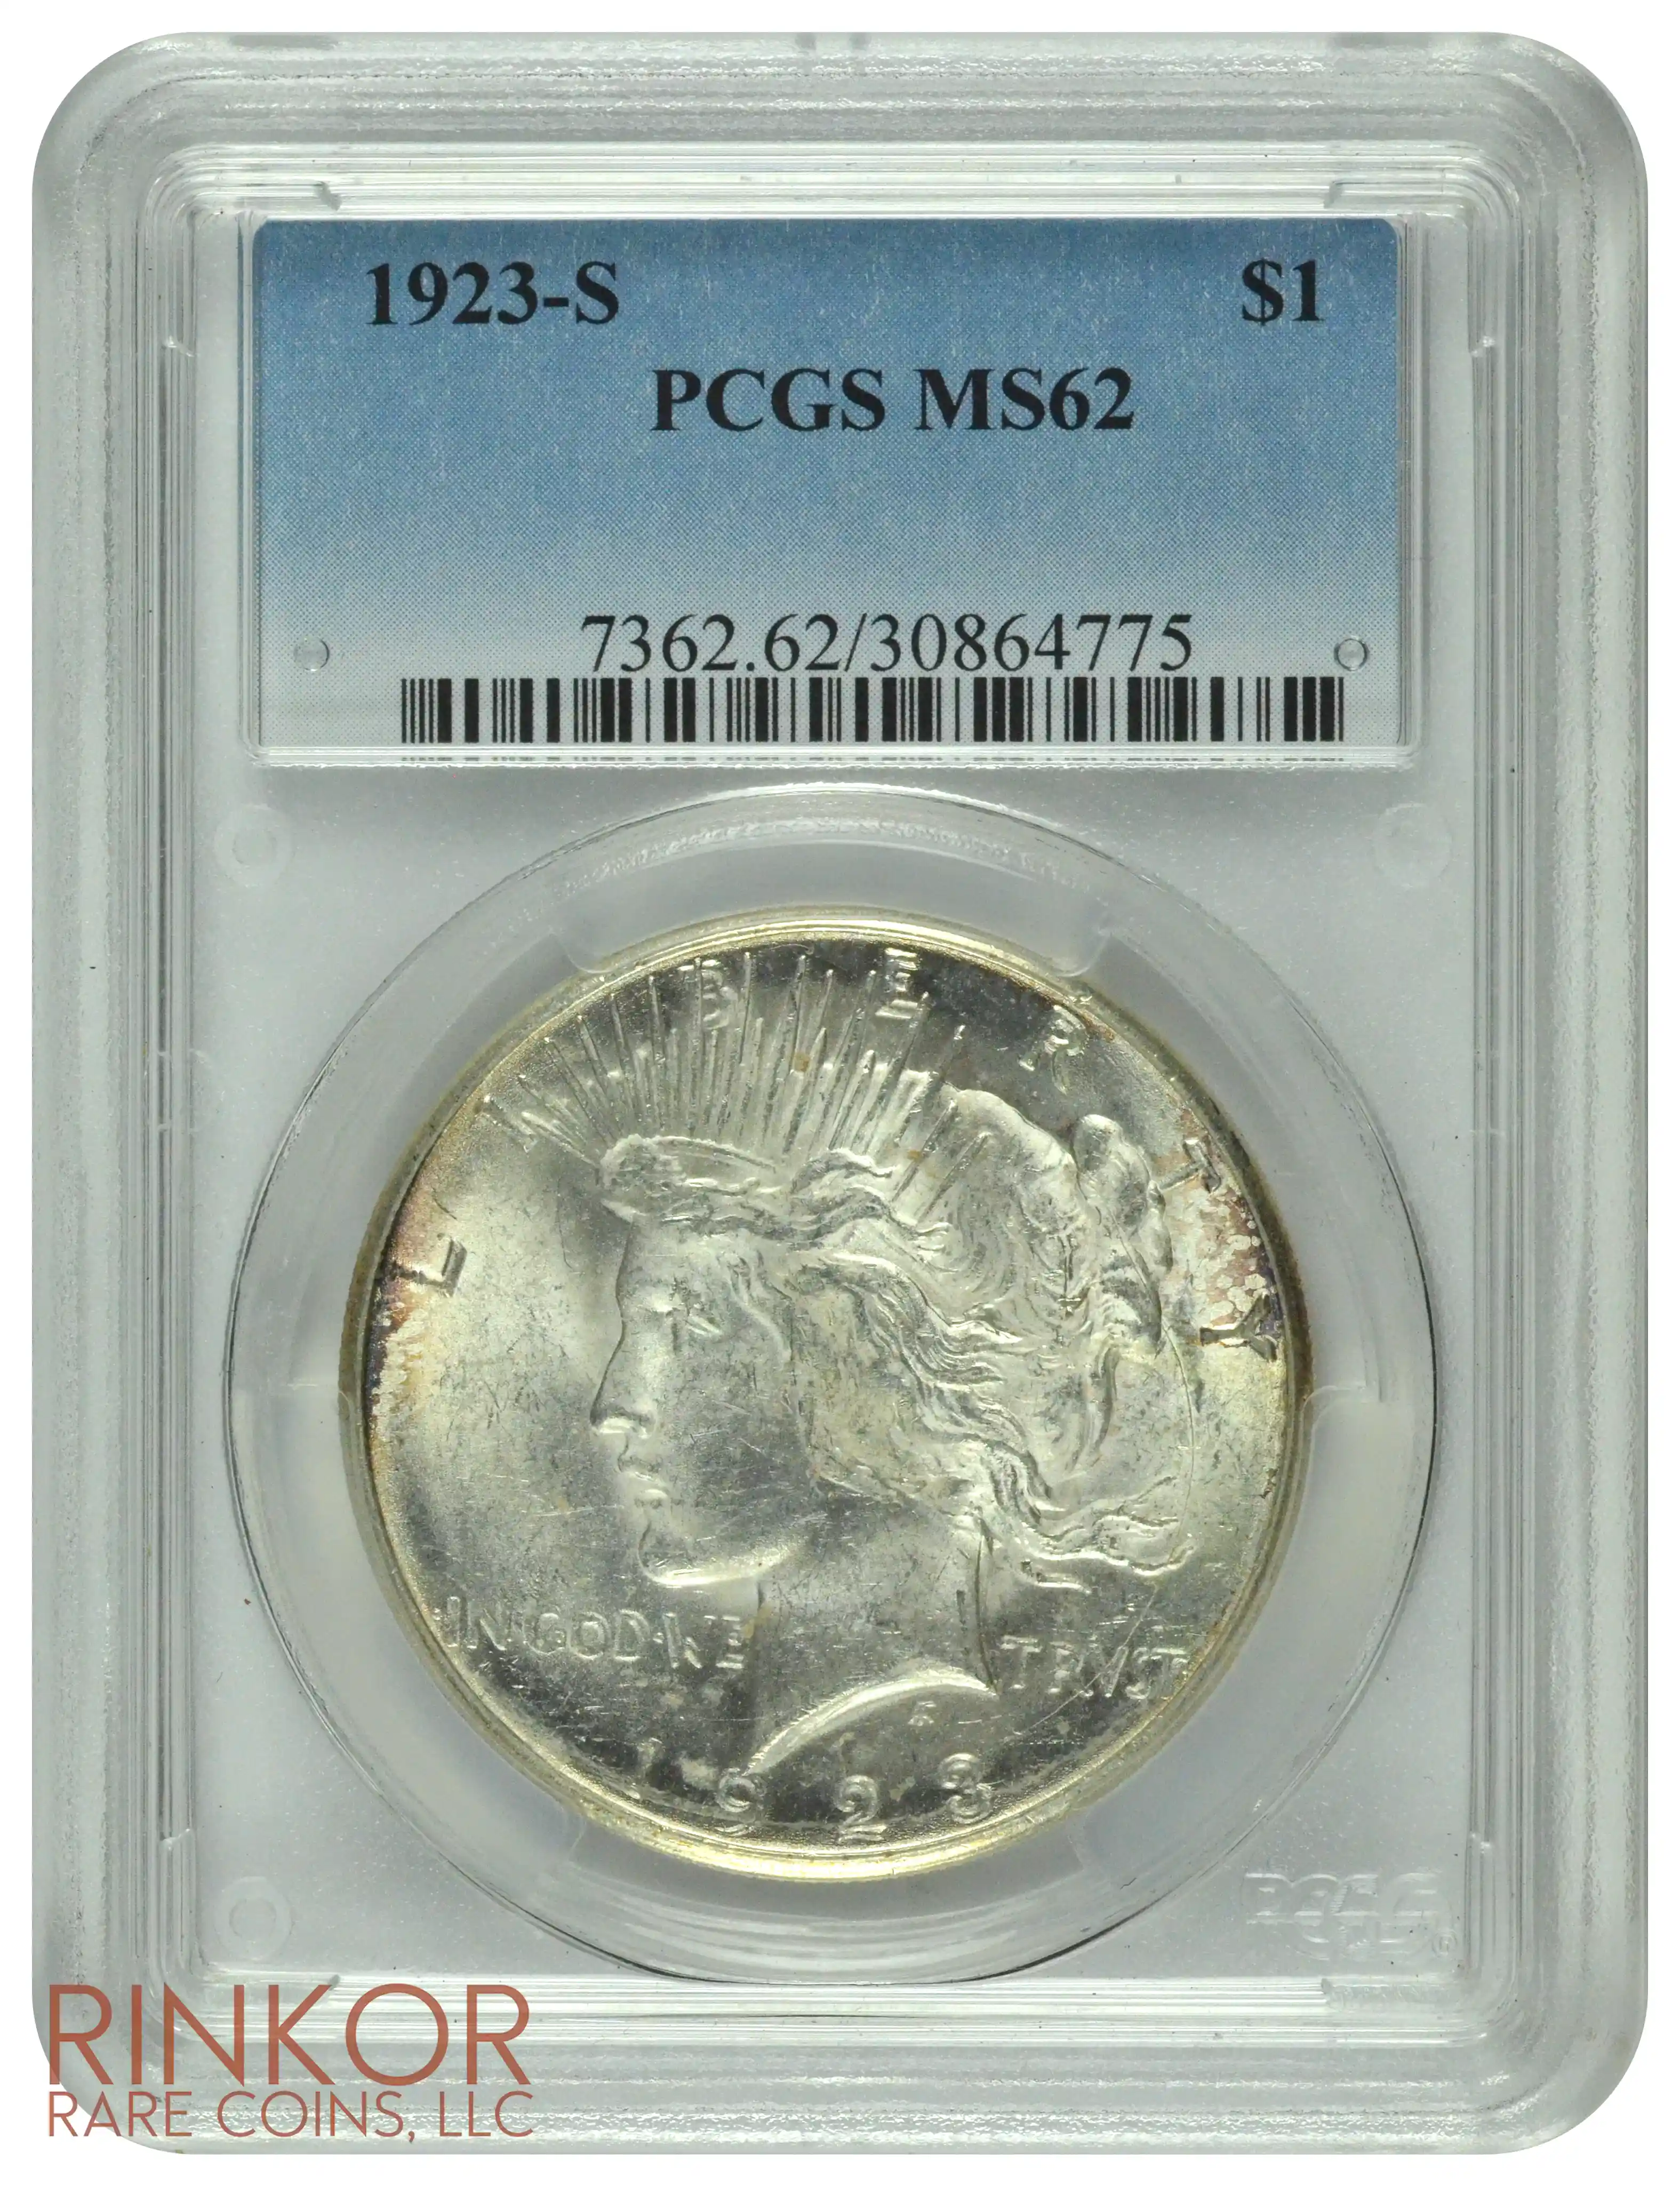 1923-S $1 PCGS MS 62